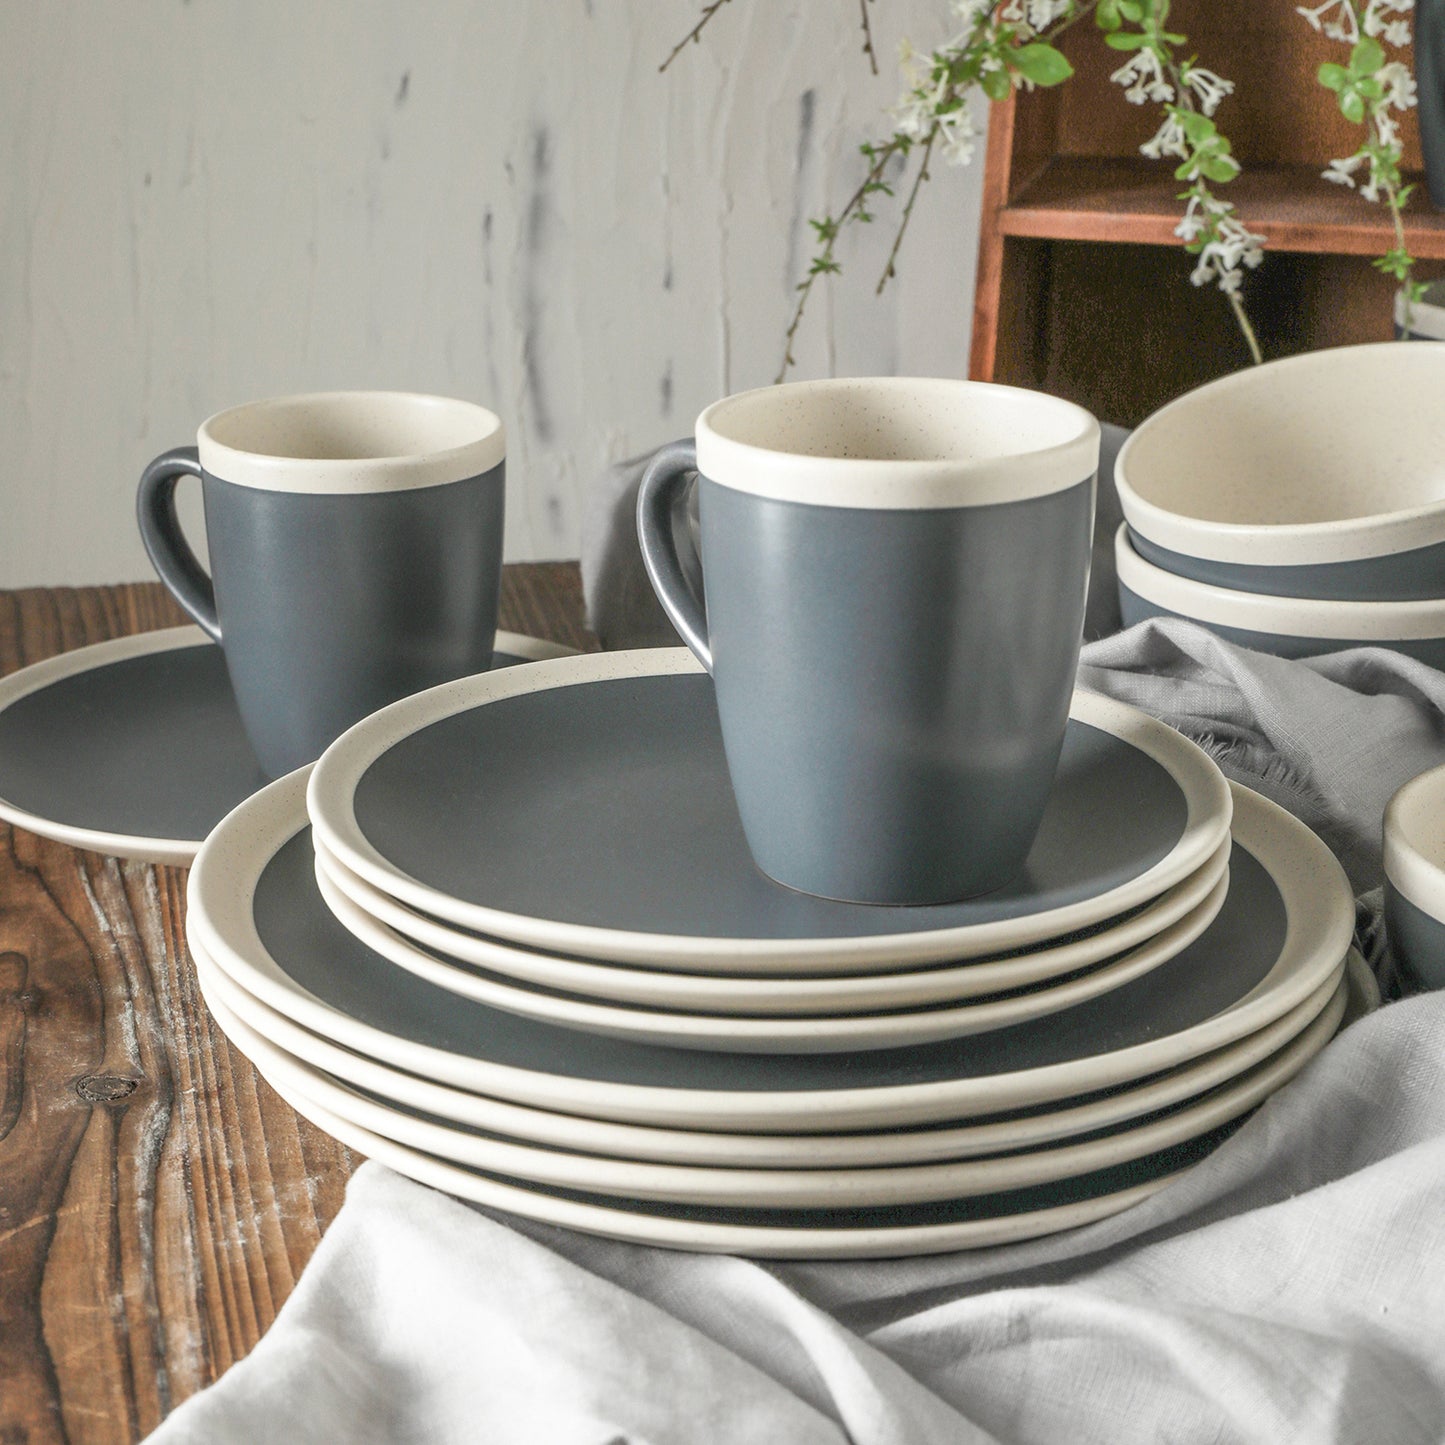 Serenity Stoneware Dinnerware Set - Dark Gray And Cream